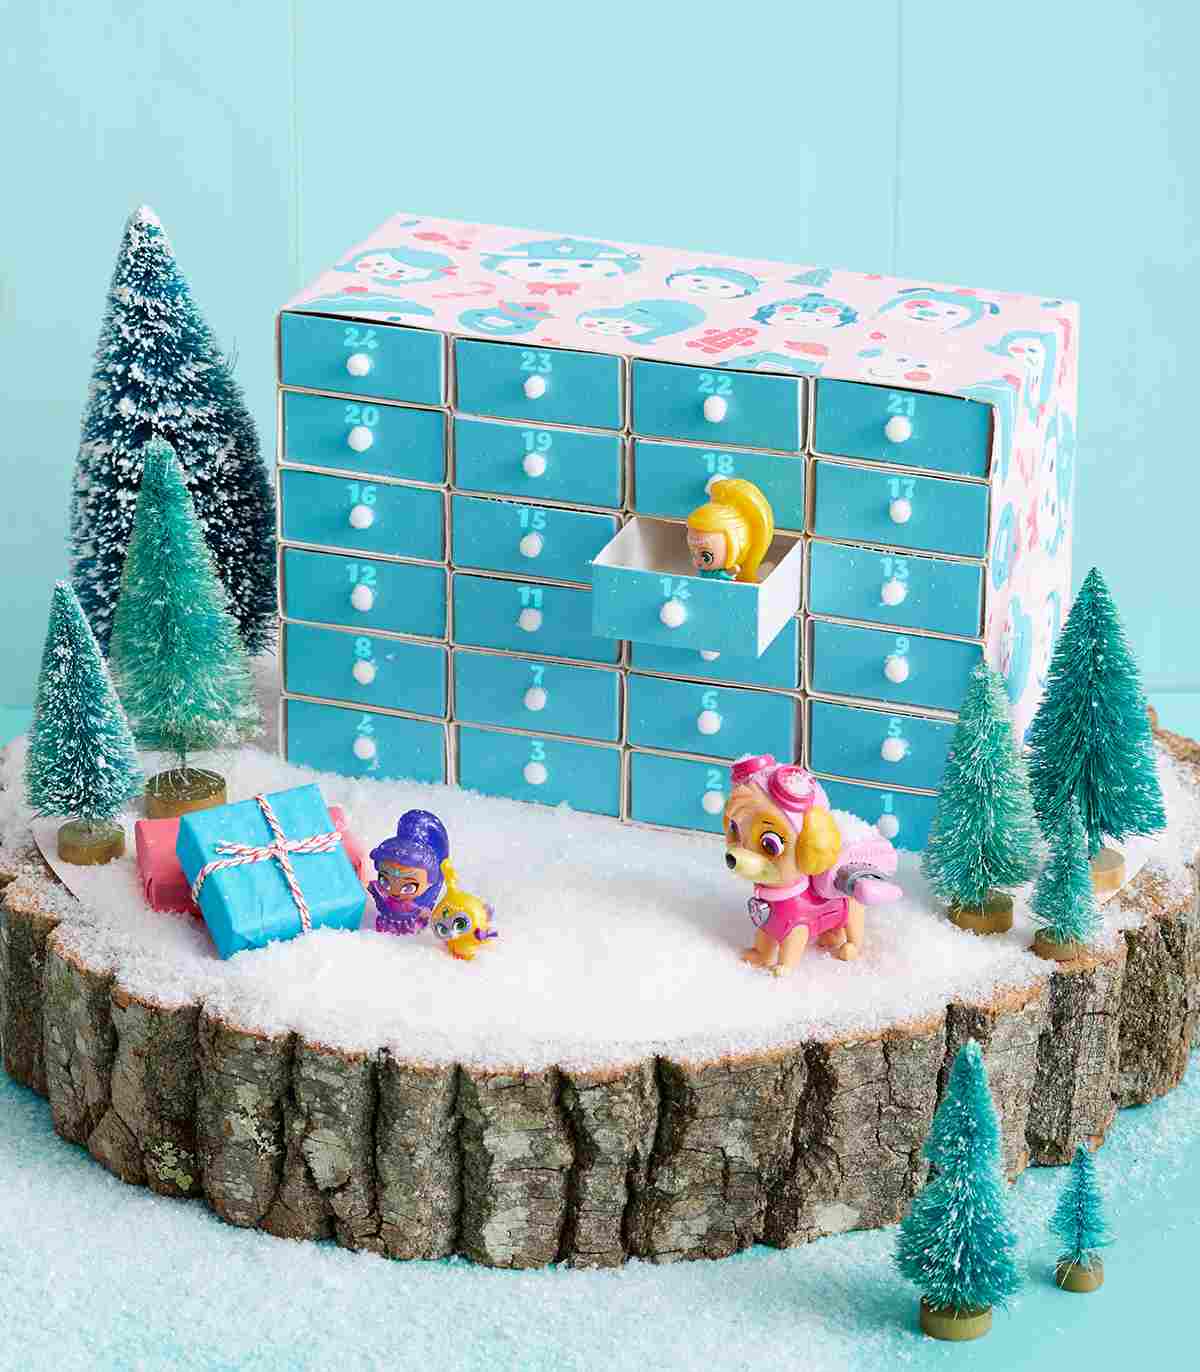 Adventskalender aus Streichholzschachteln selber machen Ideen für festliche Dekoration zu Weihnachten auf Baumstamm Zündholzschachteln in einer Box mit Türchen